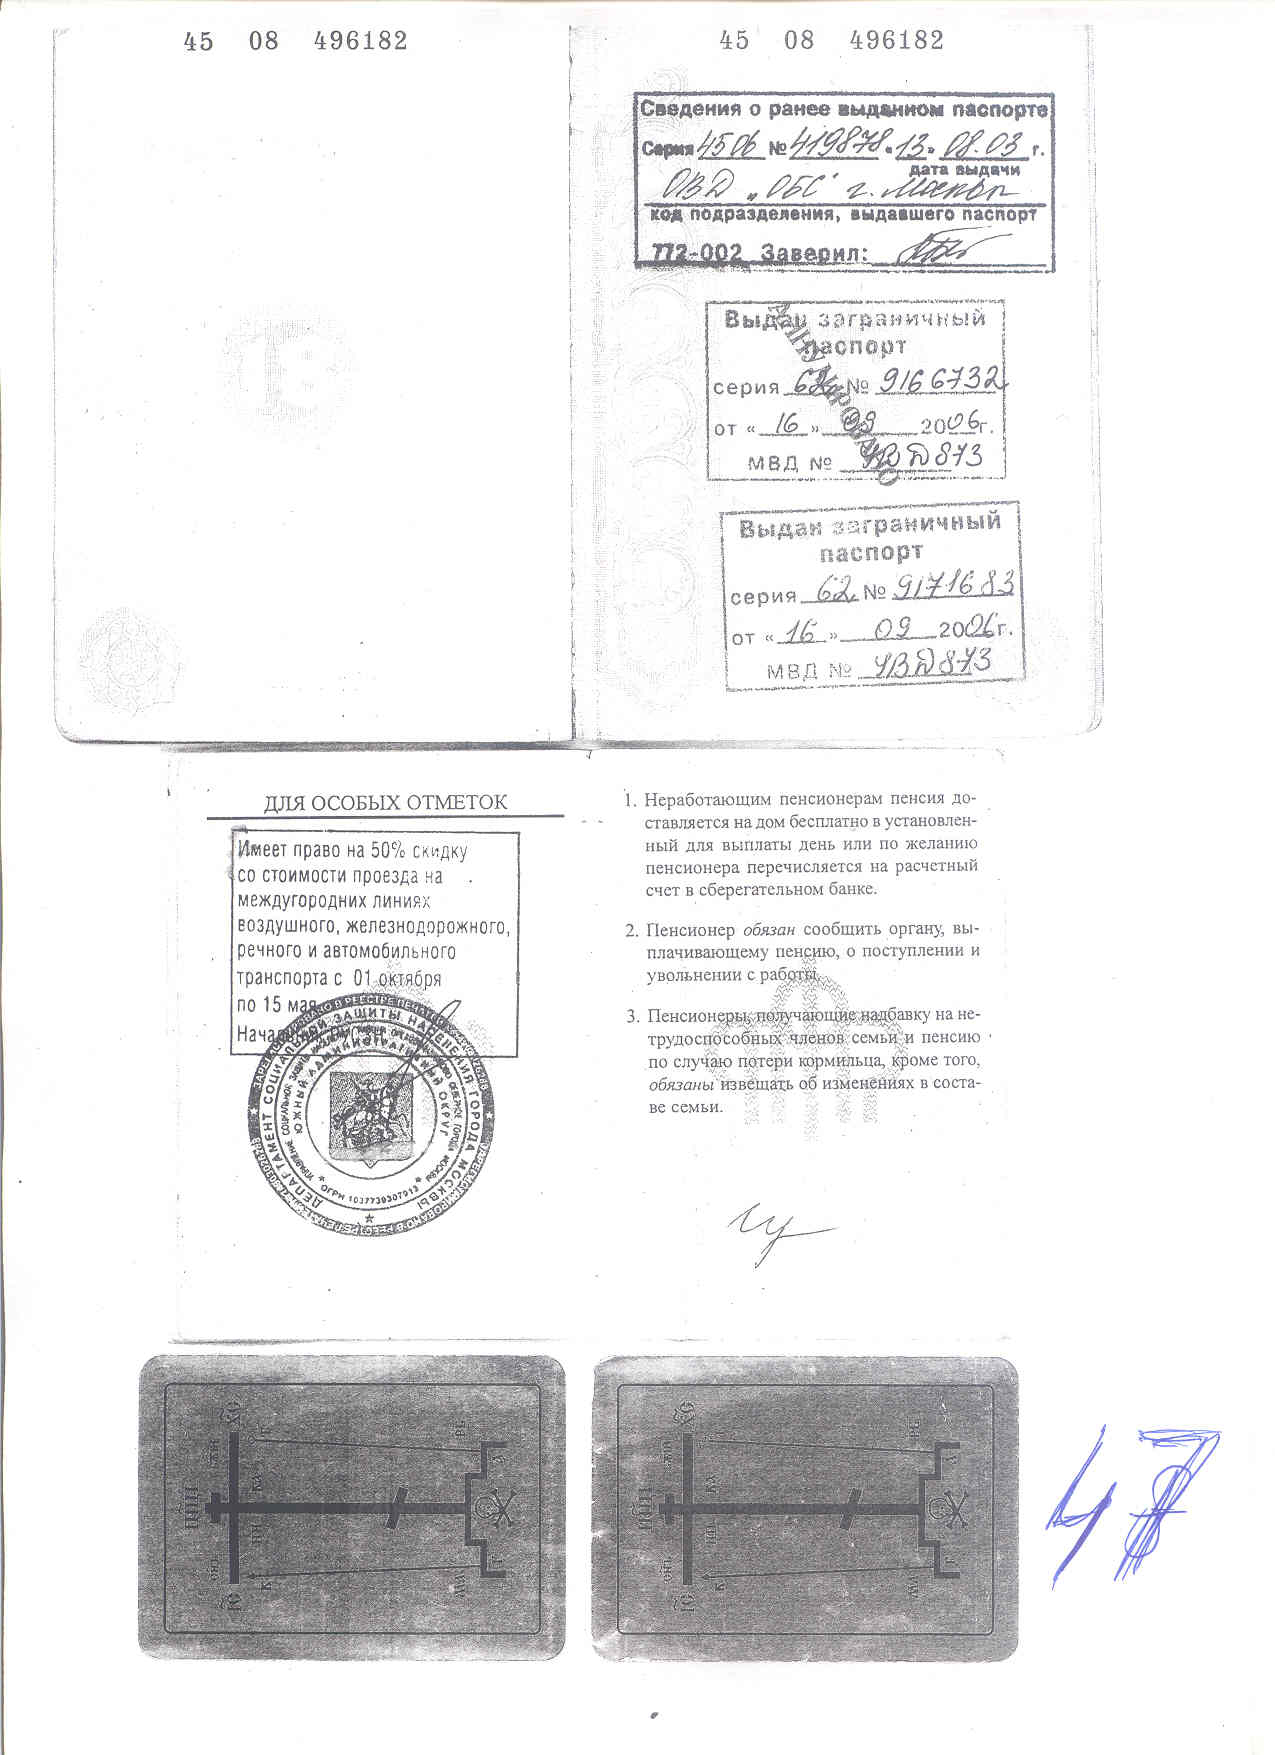 фото разворота паспорта с актуальной регистрацией